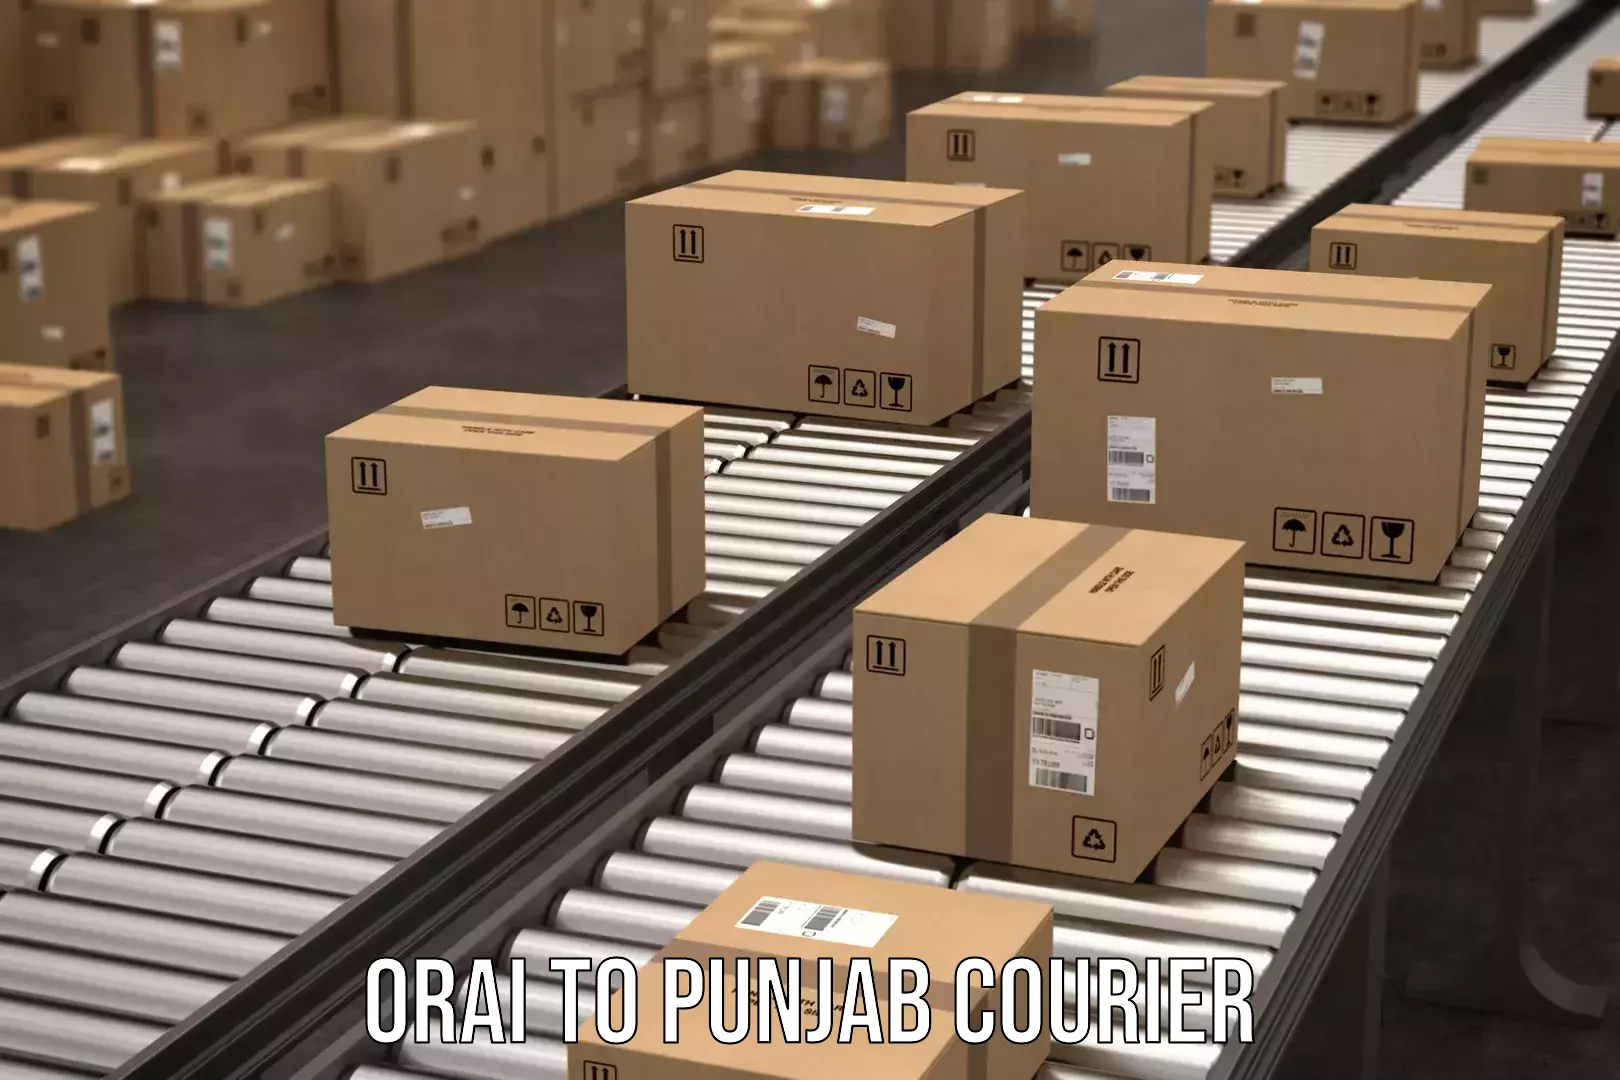 Express courier capabilities Orai to Abohar